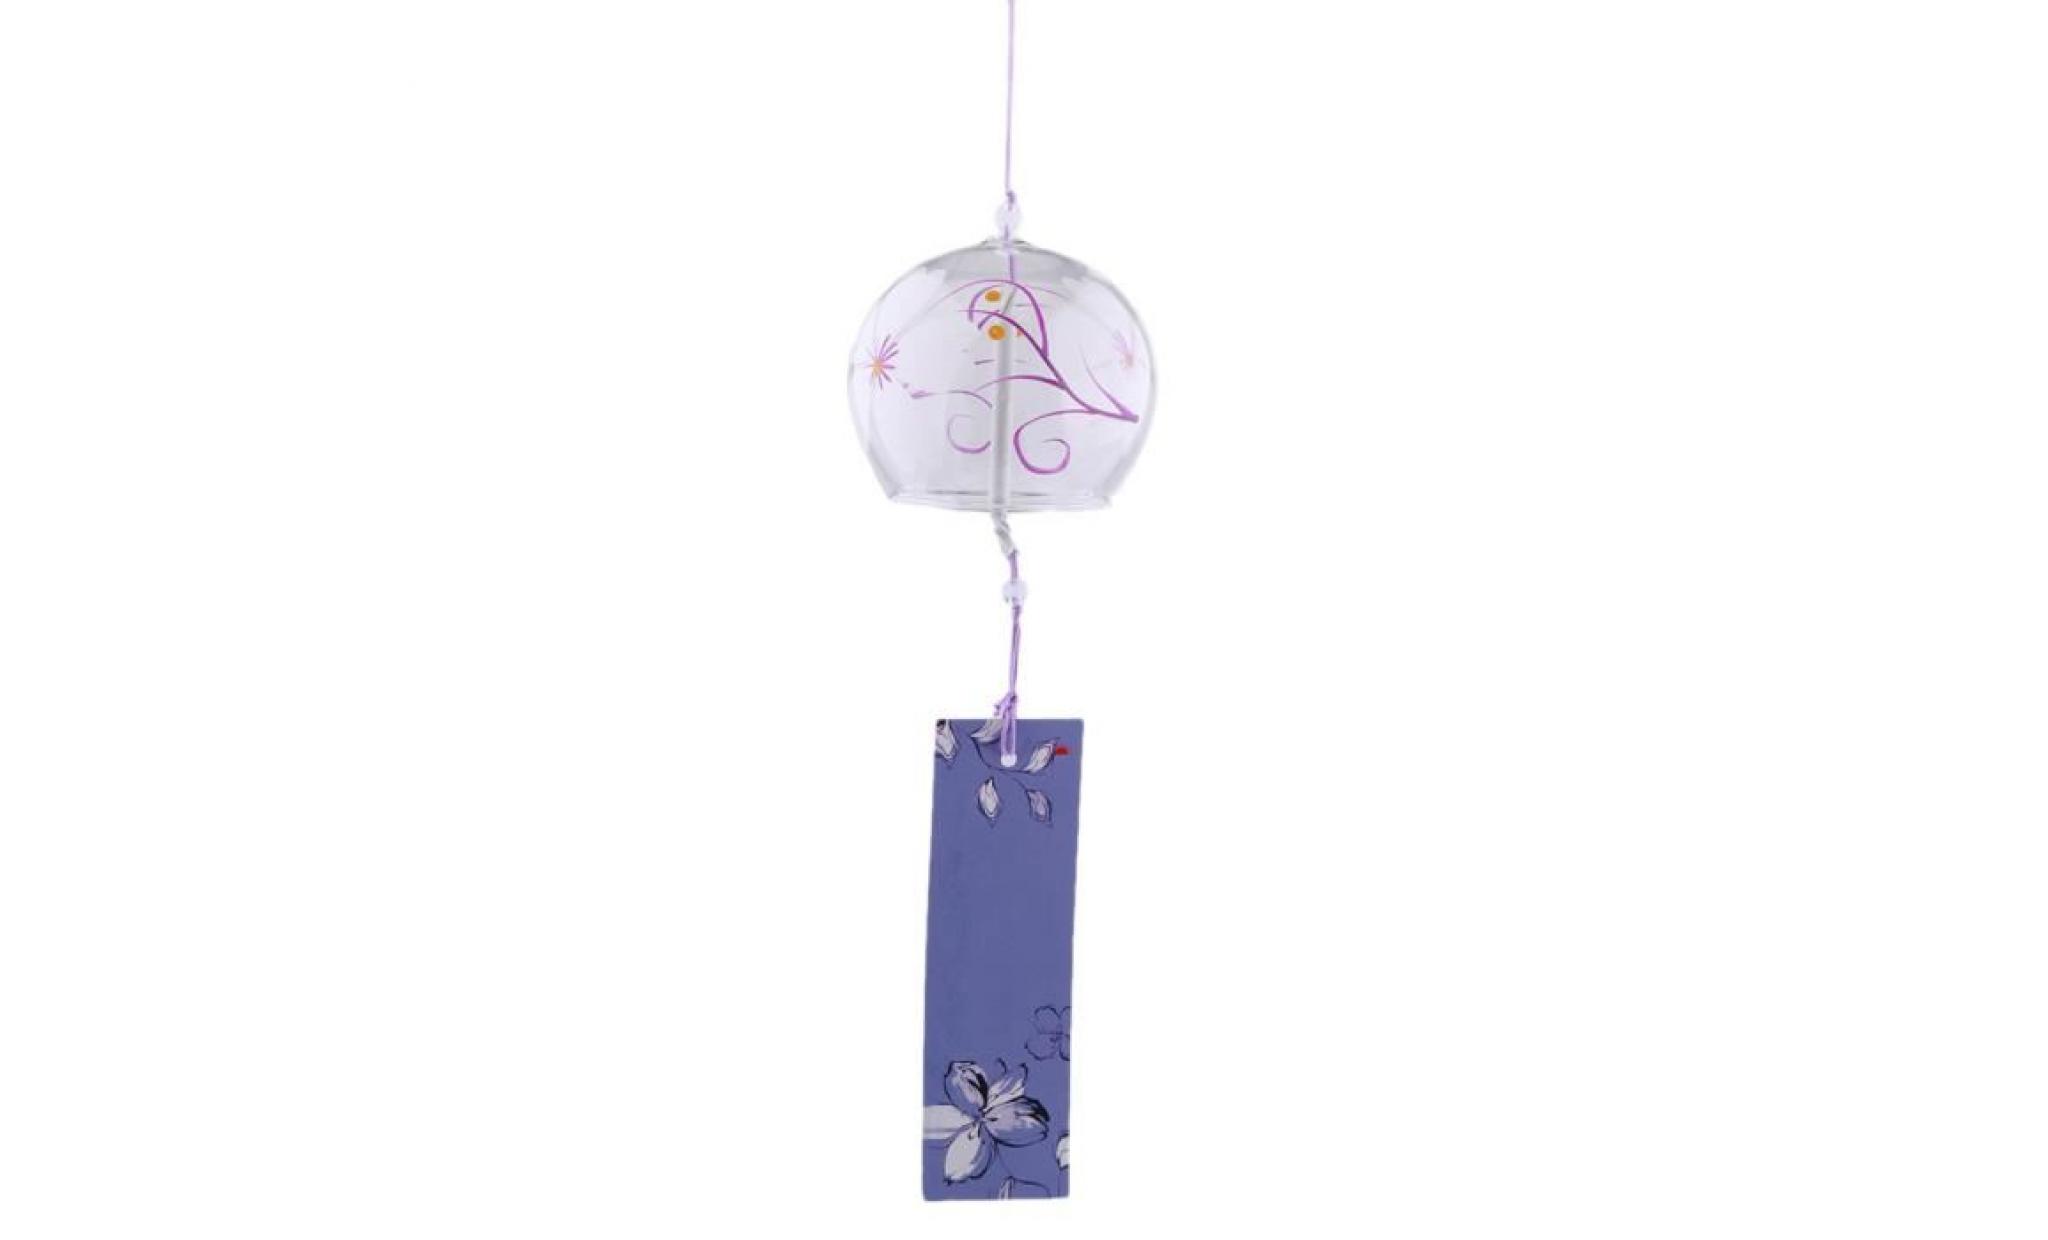 carillon a vent windchime en verre de style japonais suspendus bénédiction cloches carillons éoliens à la maison 1 pas cher